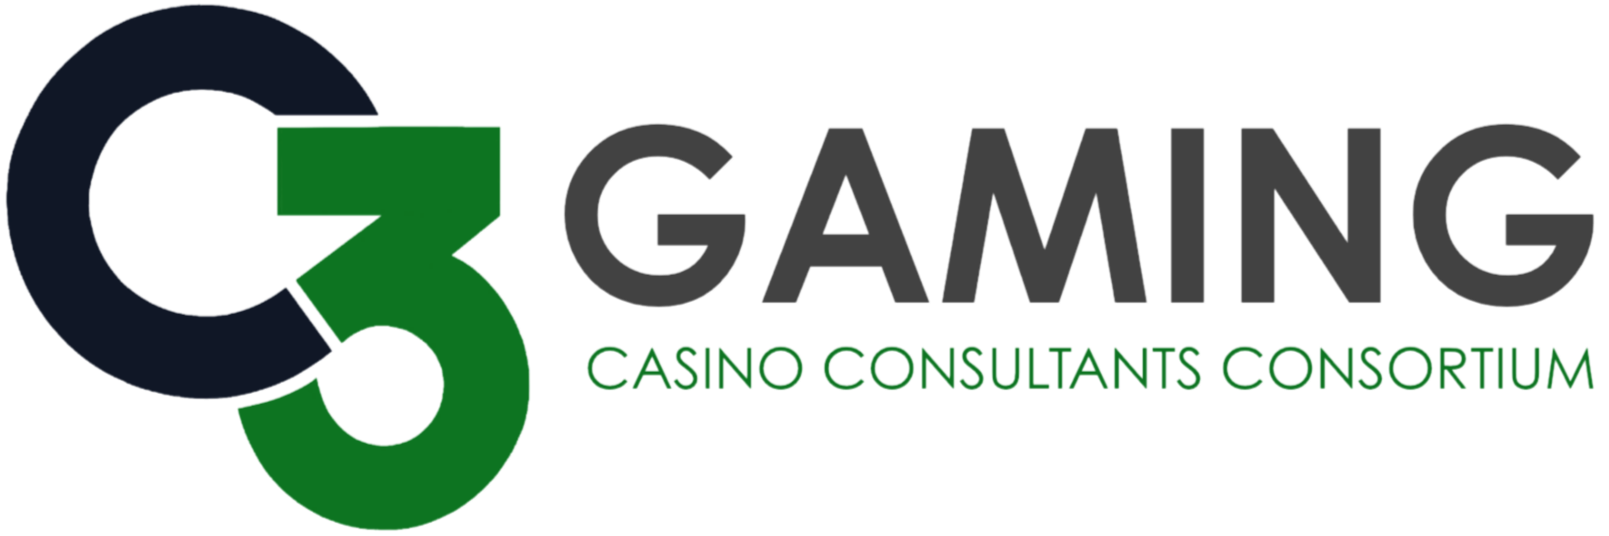 C3 Gaming Casino Consultants Consortium Logo